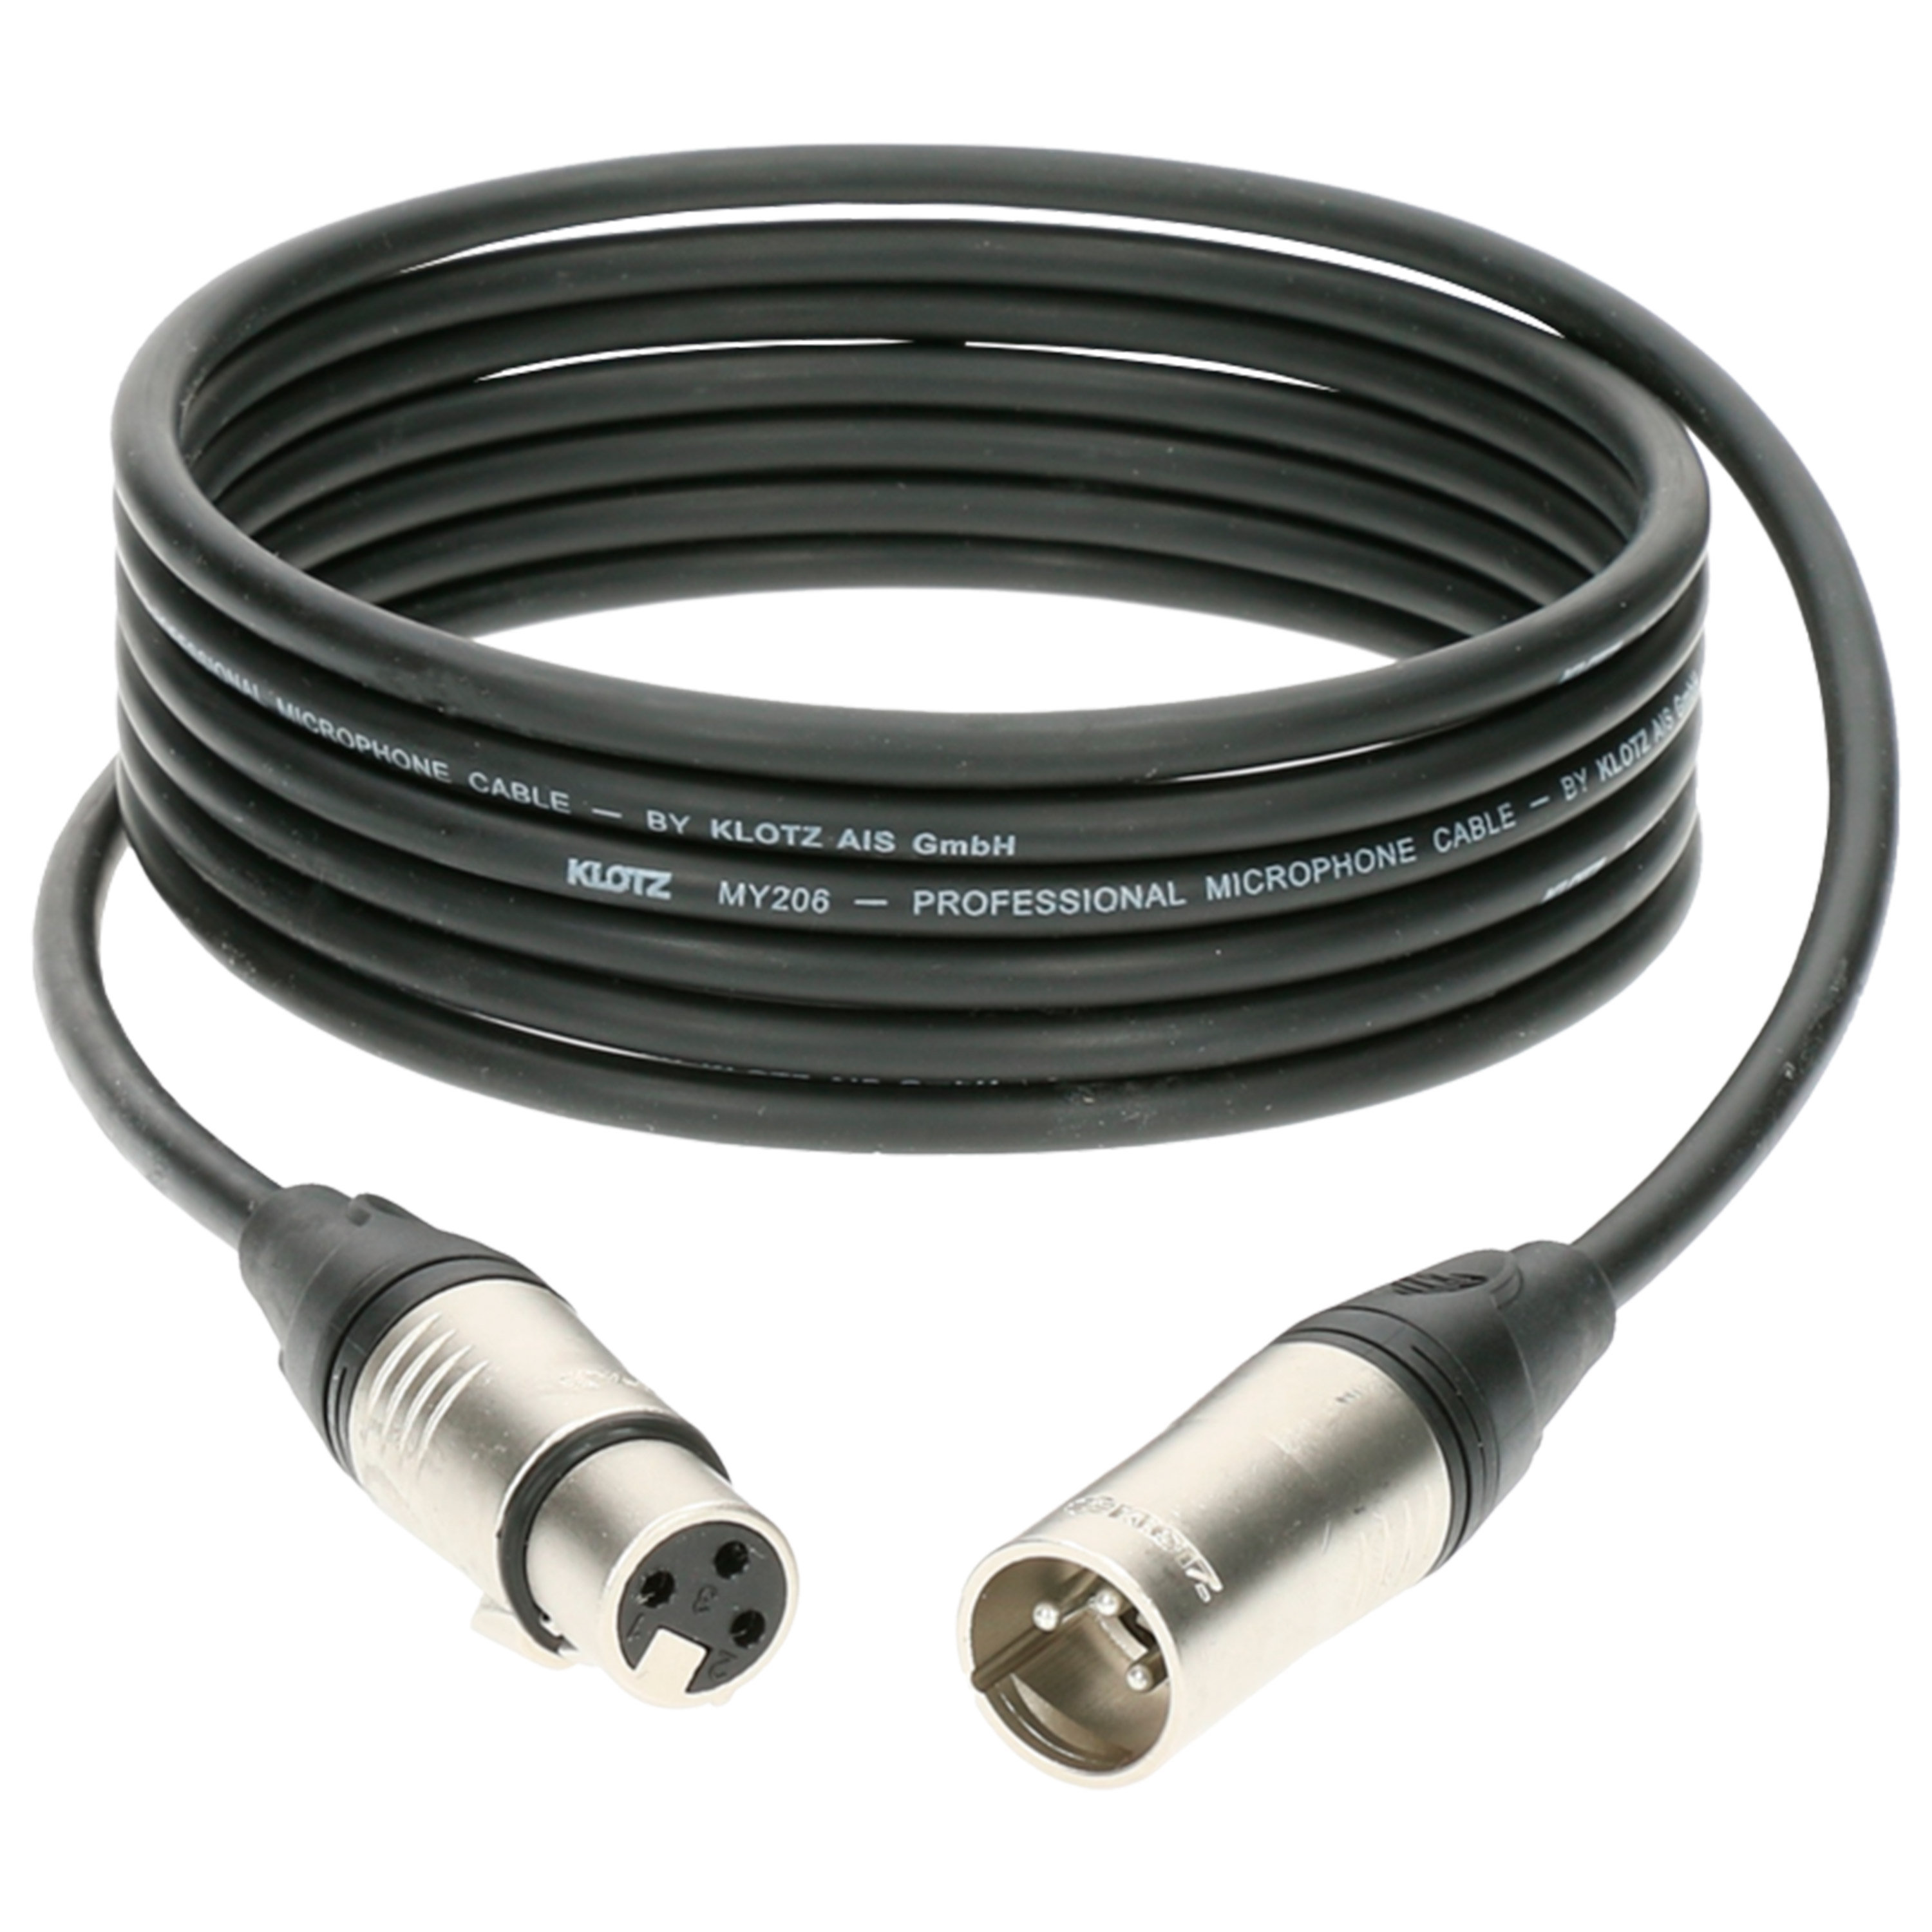 Klotz Câble M1 Pro XLR mâle/femelle, 3m